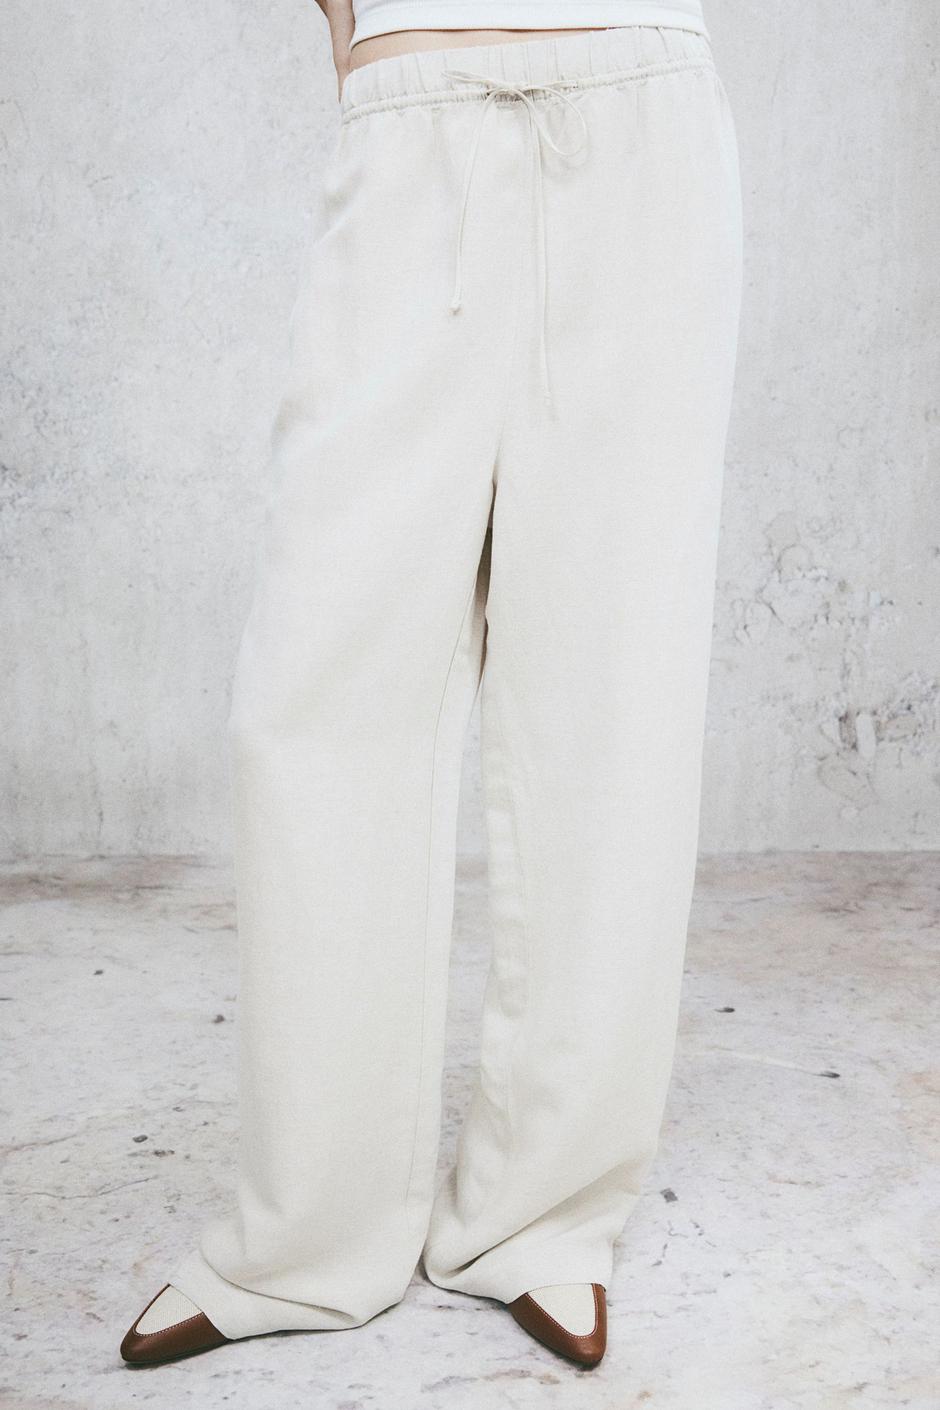 Foto: H&M, opuštene bijele hlače (19,99 eura) | Autor: H&M